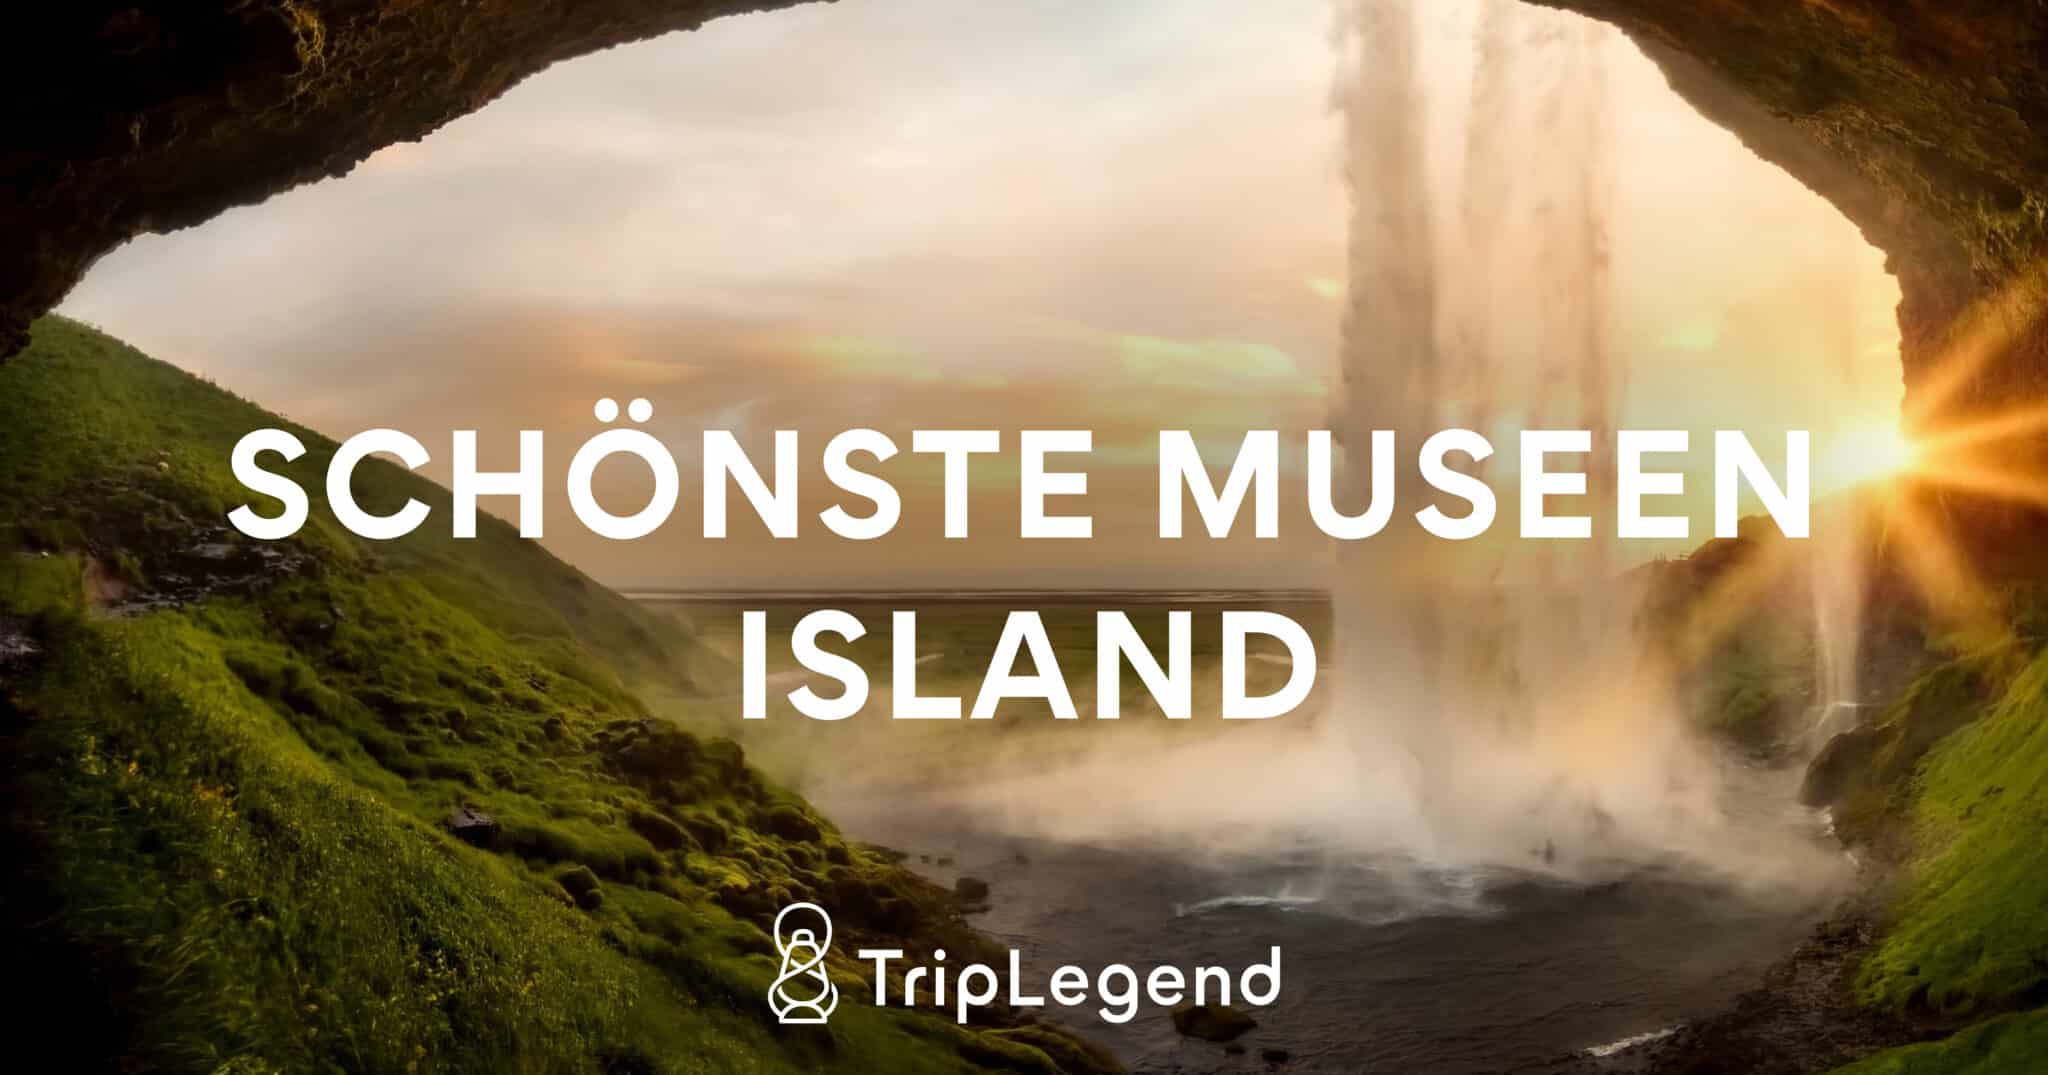 De smukkeste museer i Island